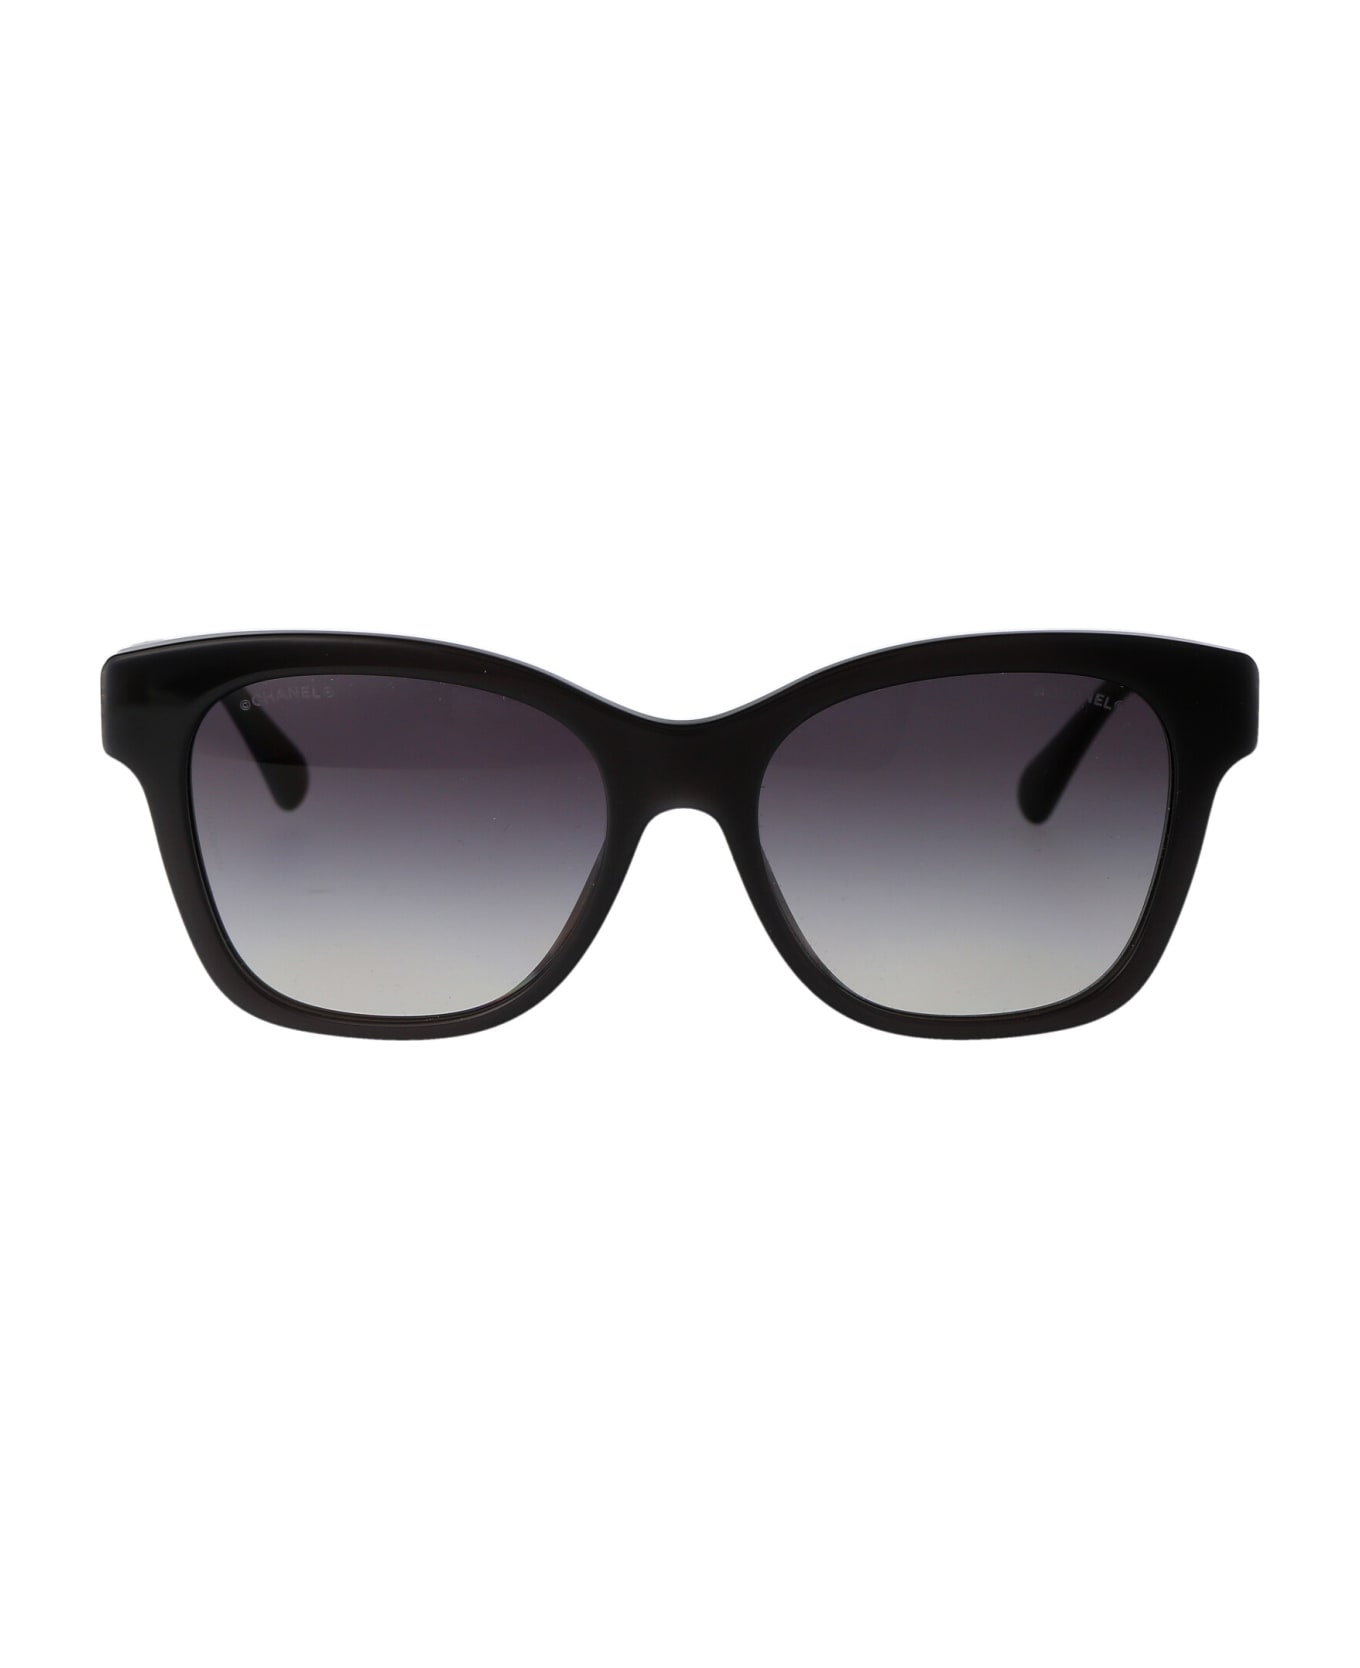 Chanel 0ch5482h Sunglasses - 1716S6 サングラス